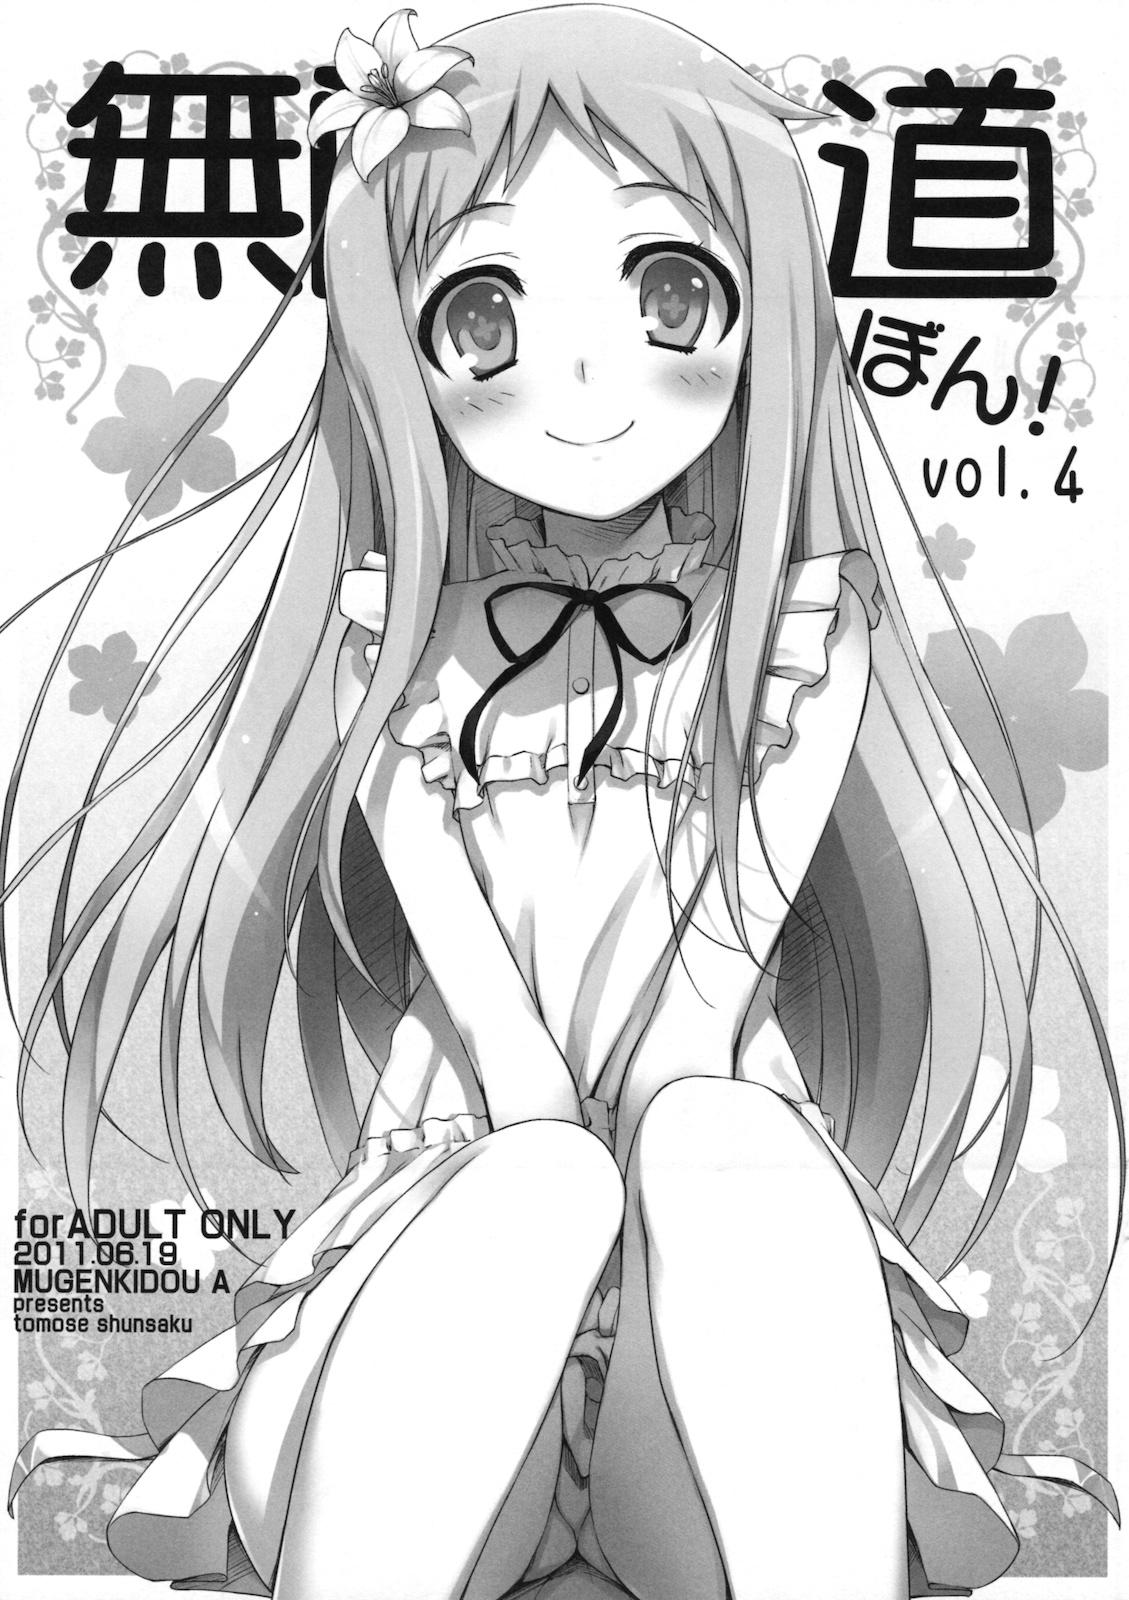 Rimming Mugenkidou bon! vol.4 - Ano hi mita hana no namae wo bokutachi wa mada shiranai Cutie - Page 1